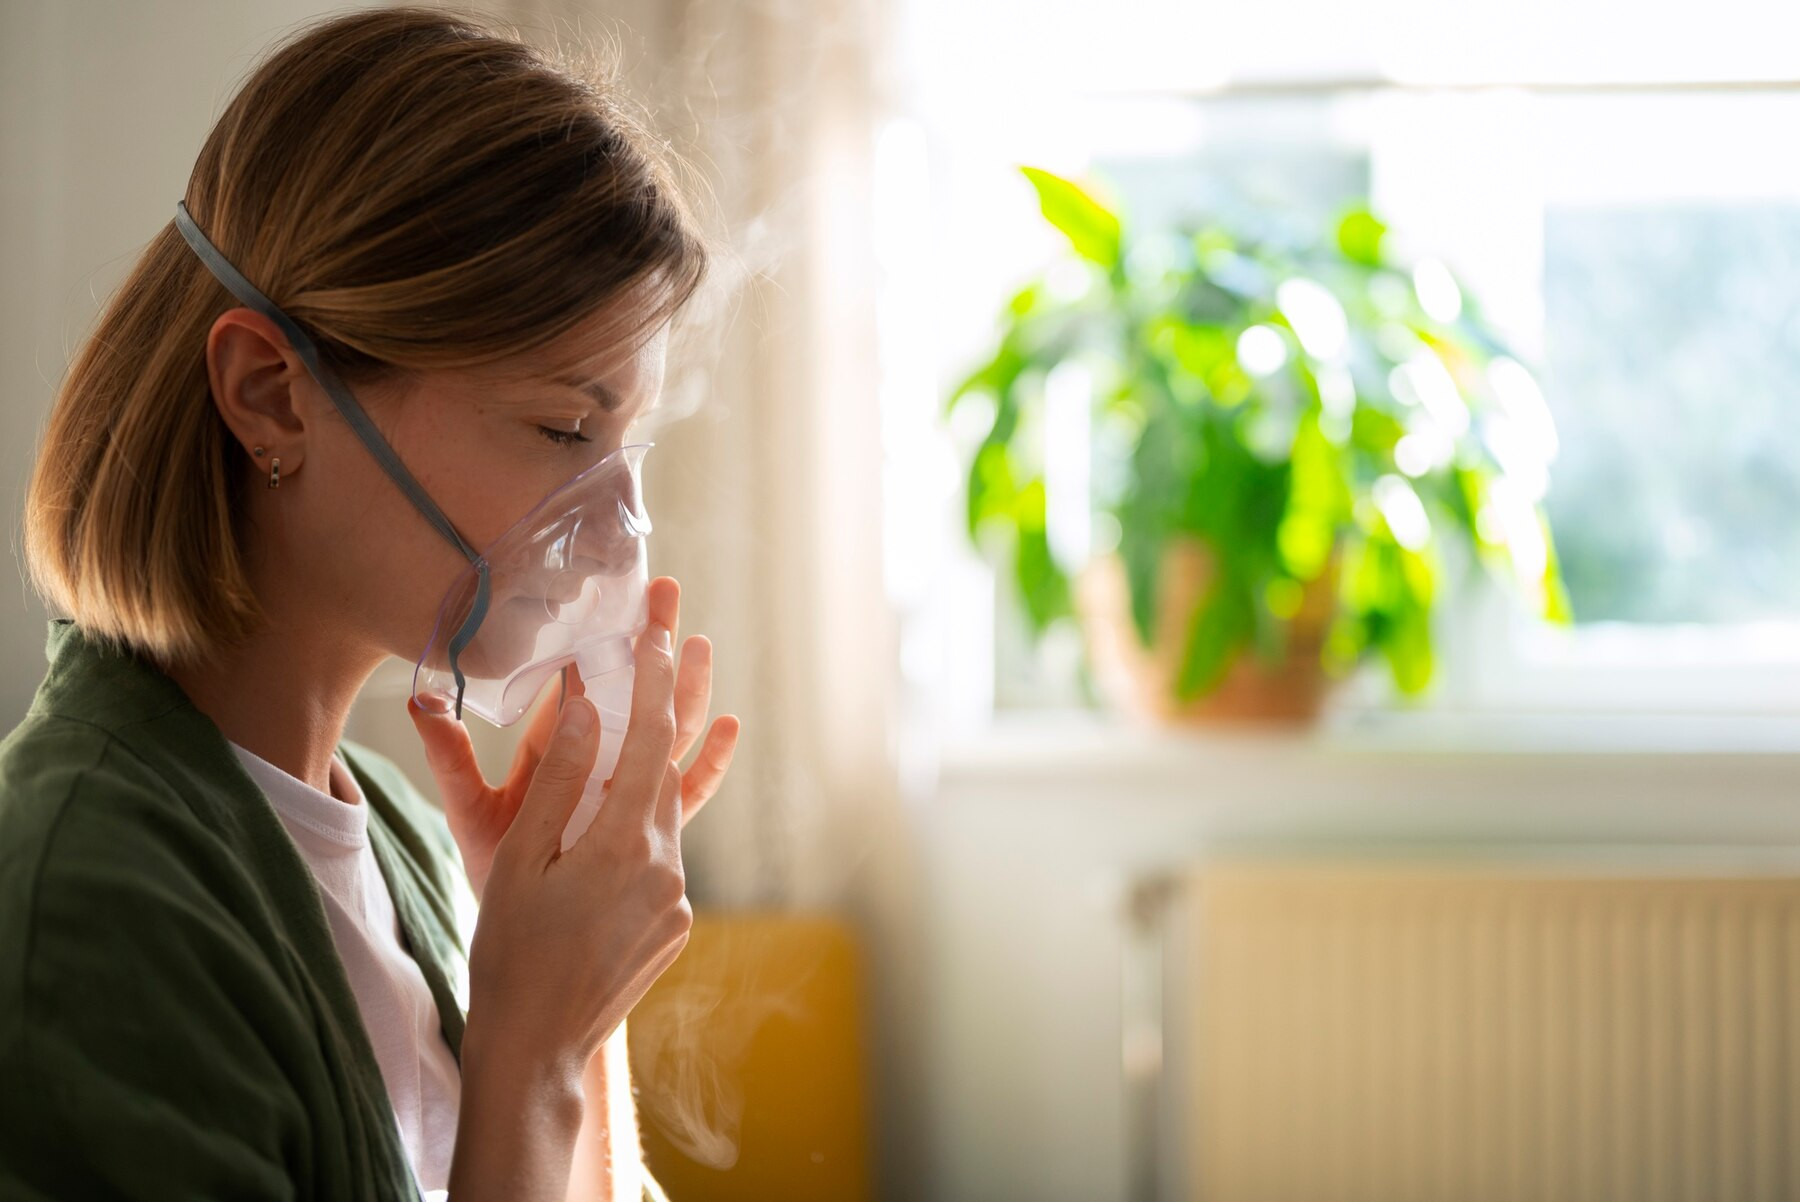 Мурманский врач объяснила, как простая работа по дому может защитить ваши легкие от загрязнений и болезней